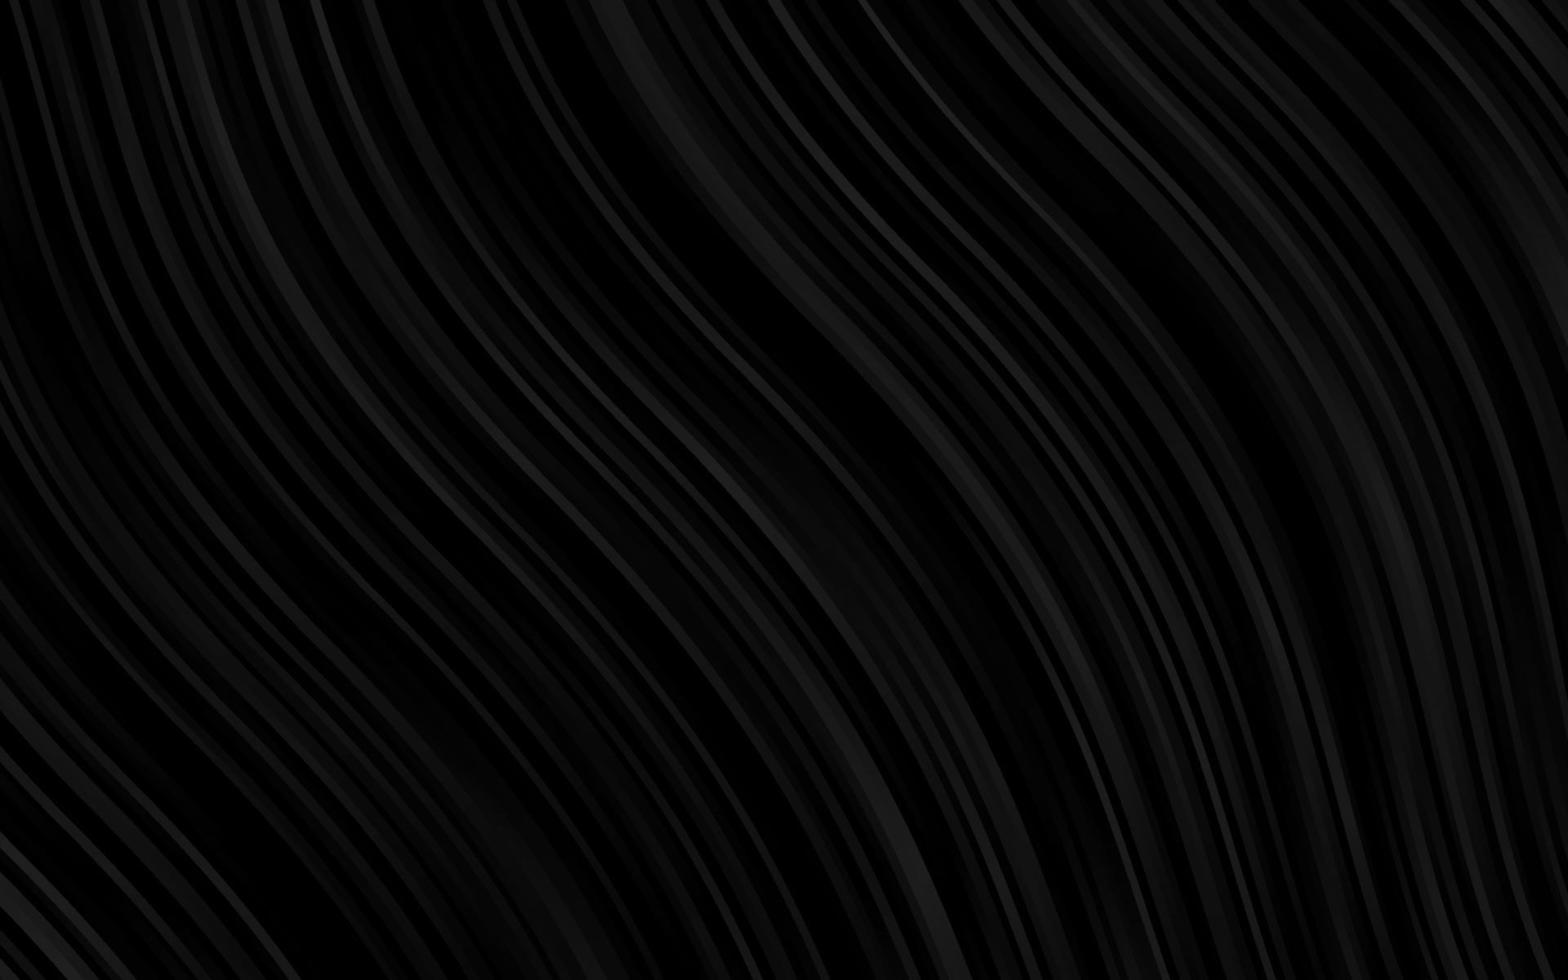 modelo de vetor roxo escuro com linhas dobradas.